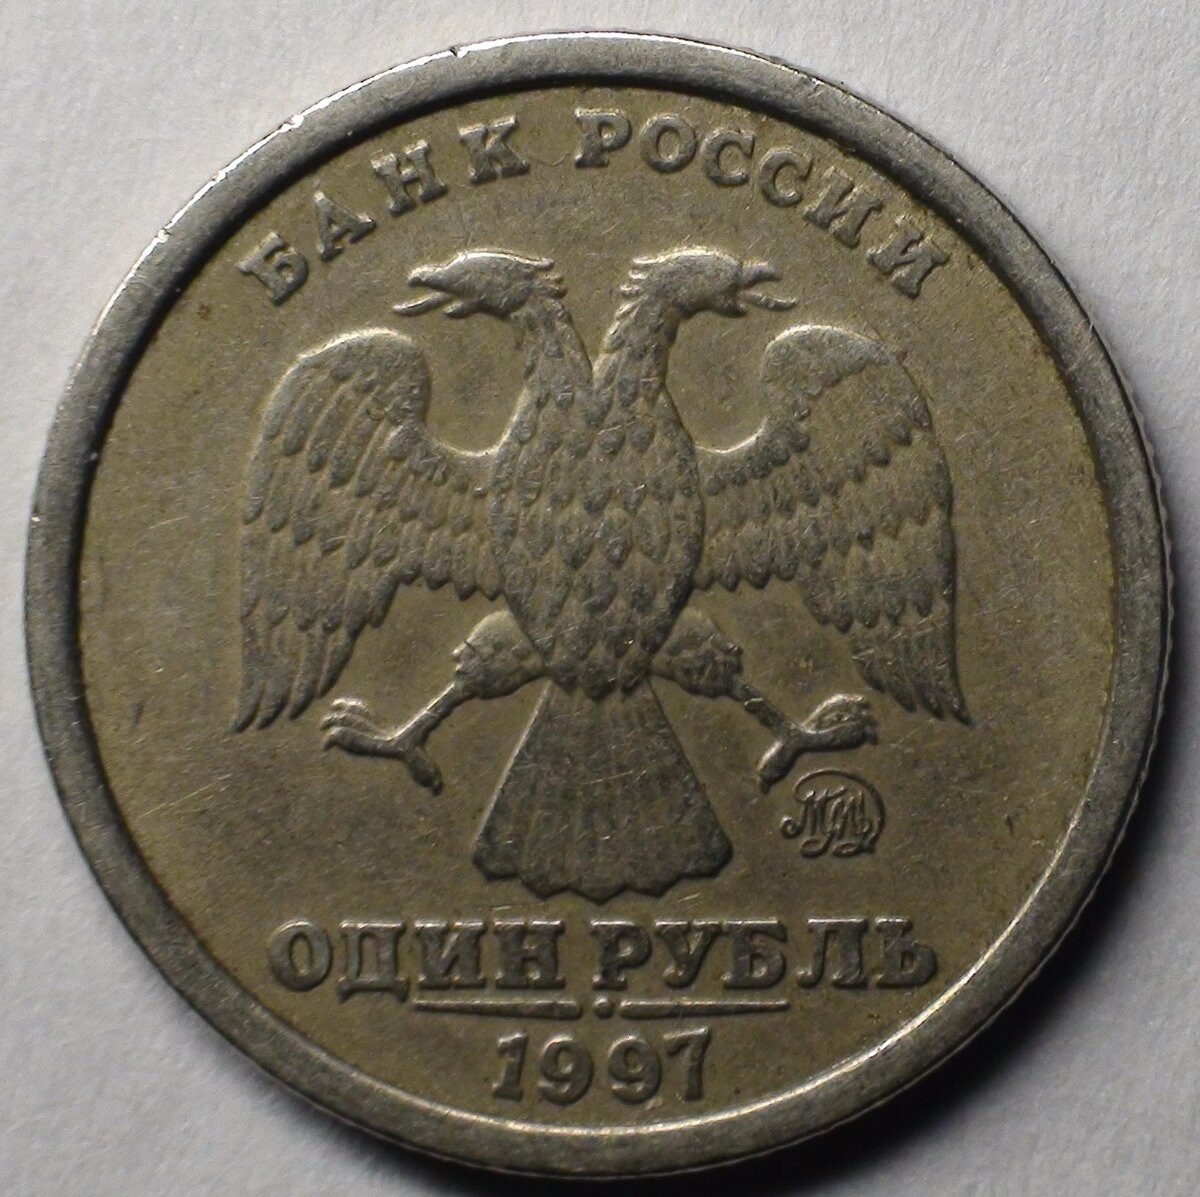 Ни для кого не секрет то, что среди монет современной России встречаются такие экземпляры, которые стоят однозначно выше своей номинальной стоимости.-2